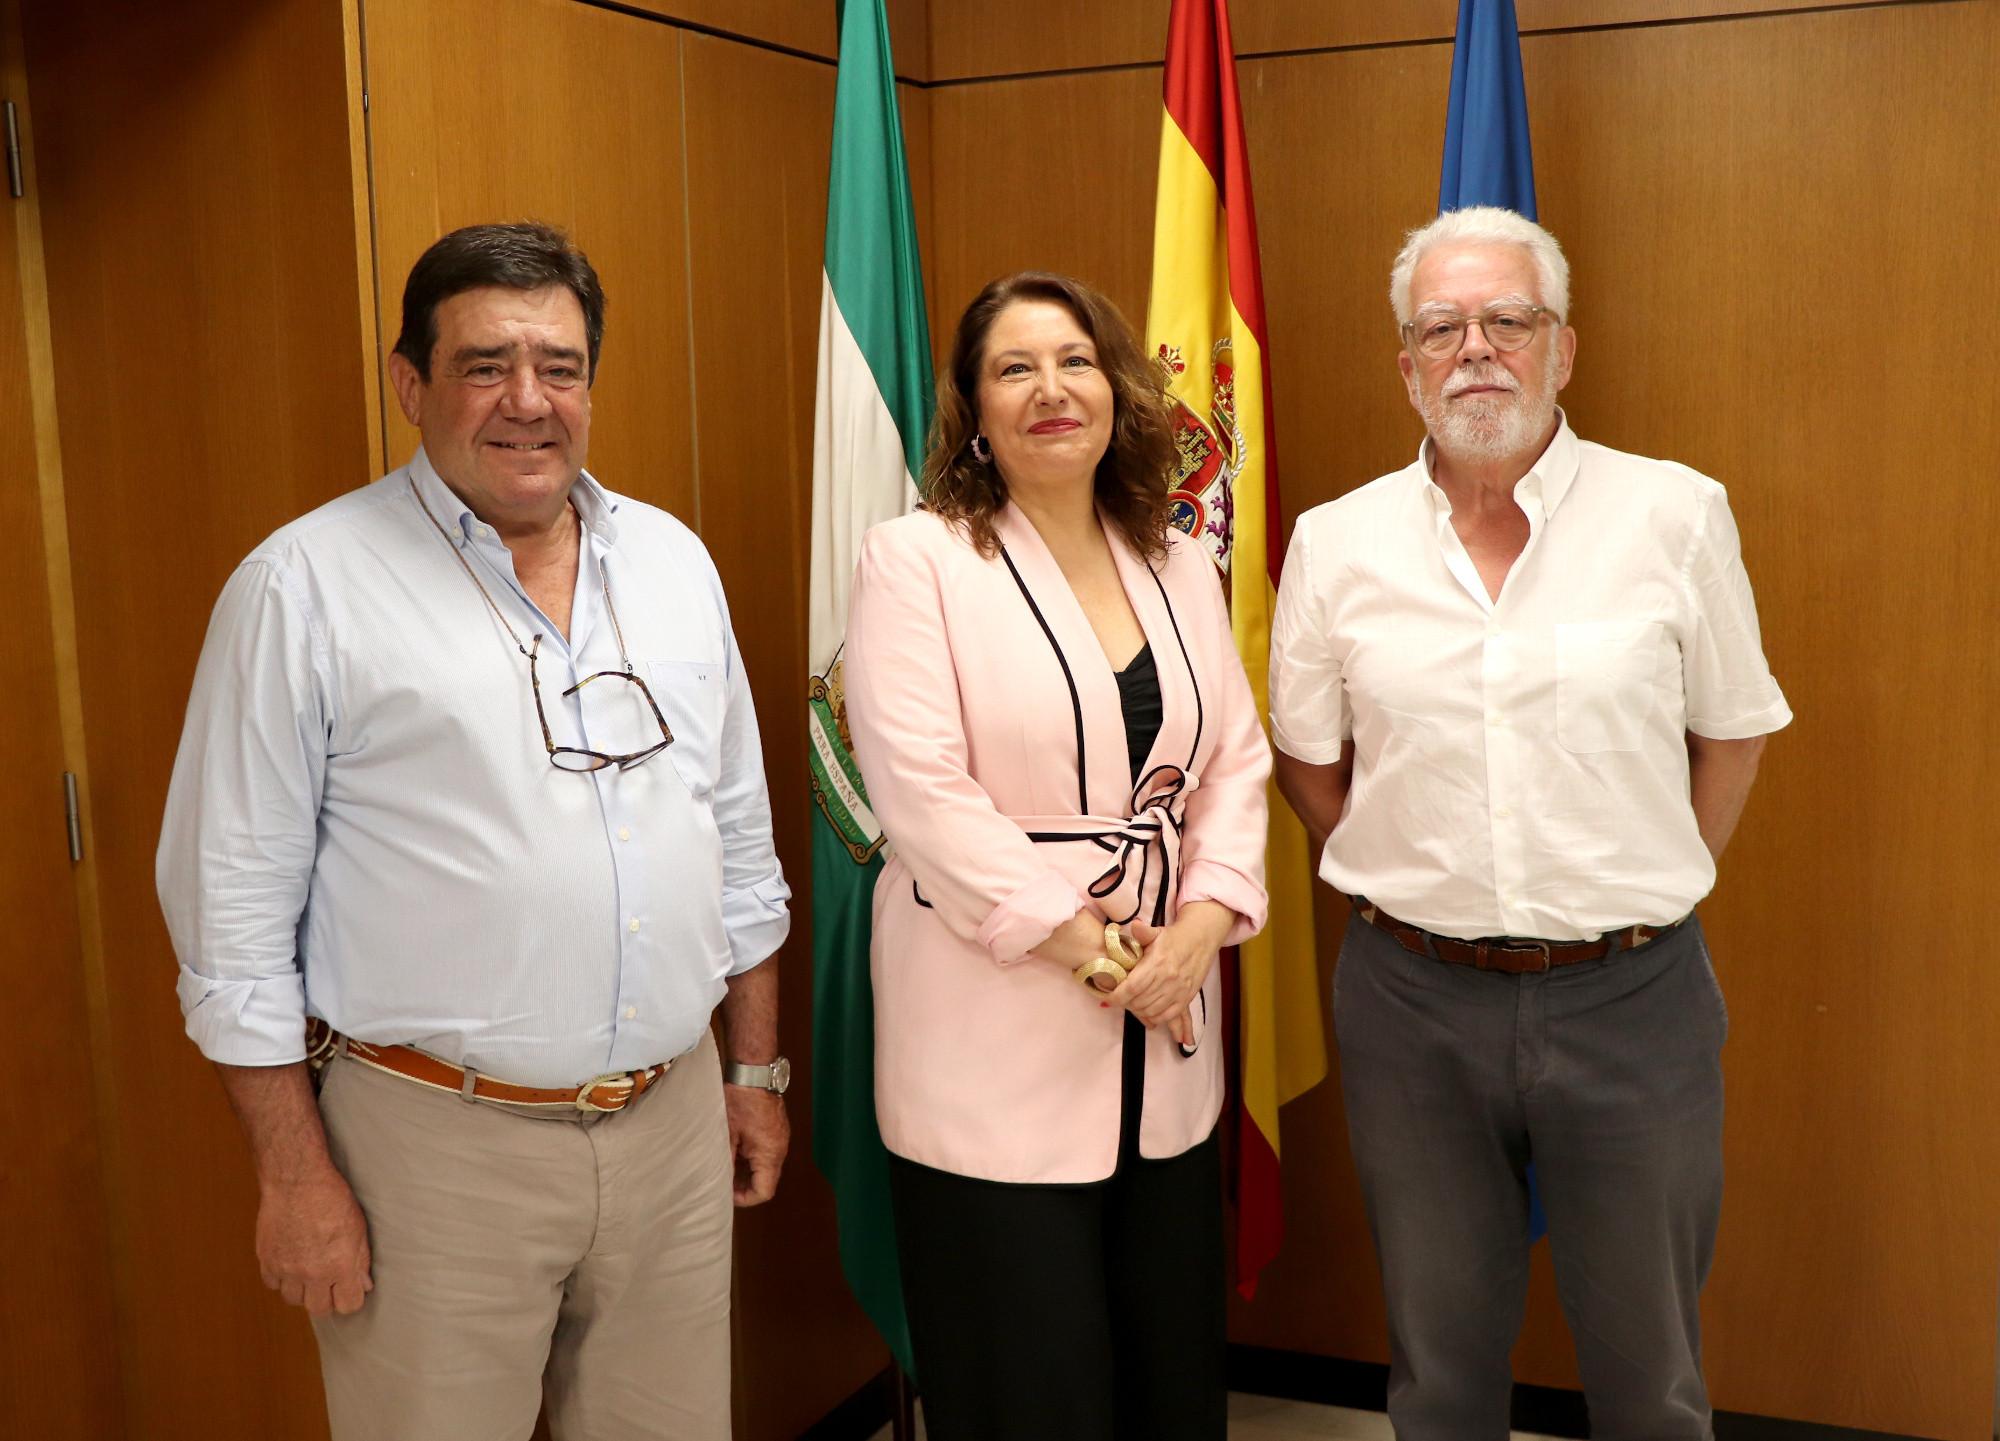 La consejera de Agricultura se reúne con representantes de las organizaciones agrarias y cooperativas agroalimentarias andaluzas